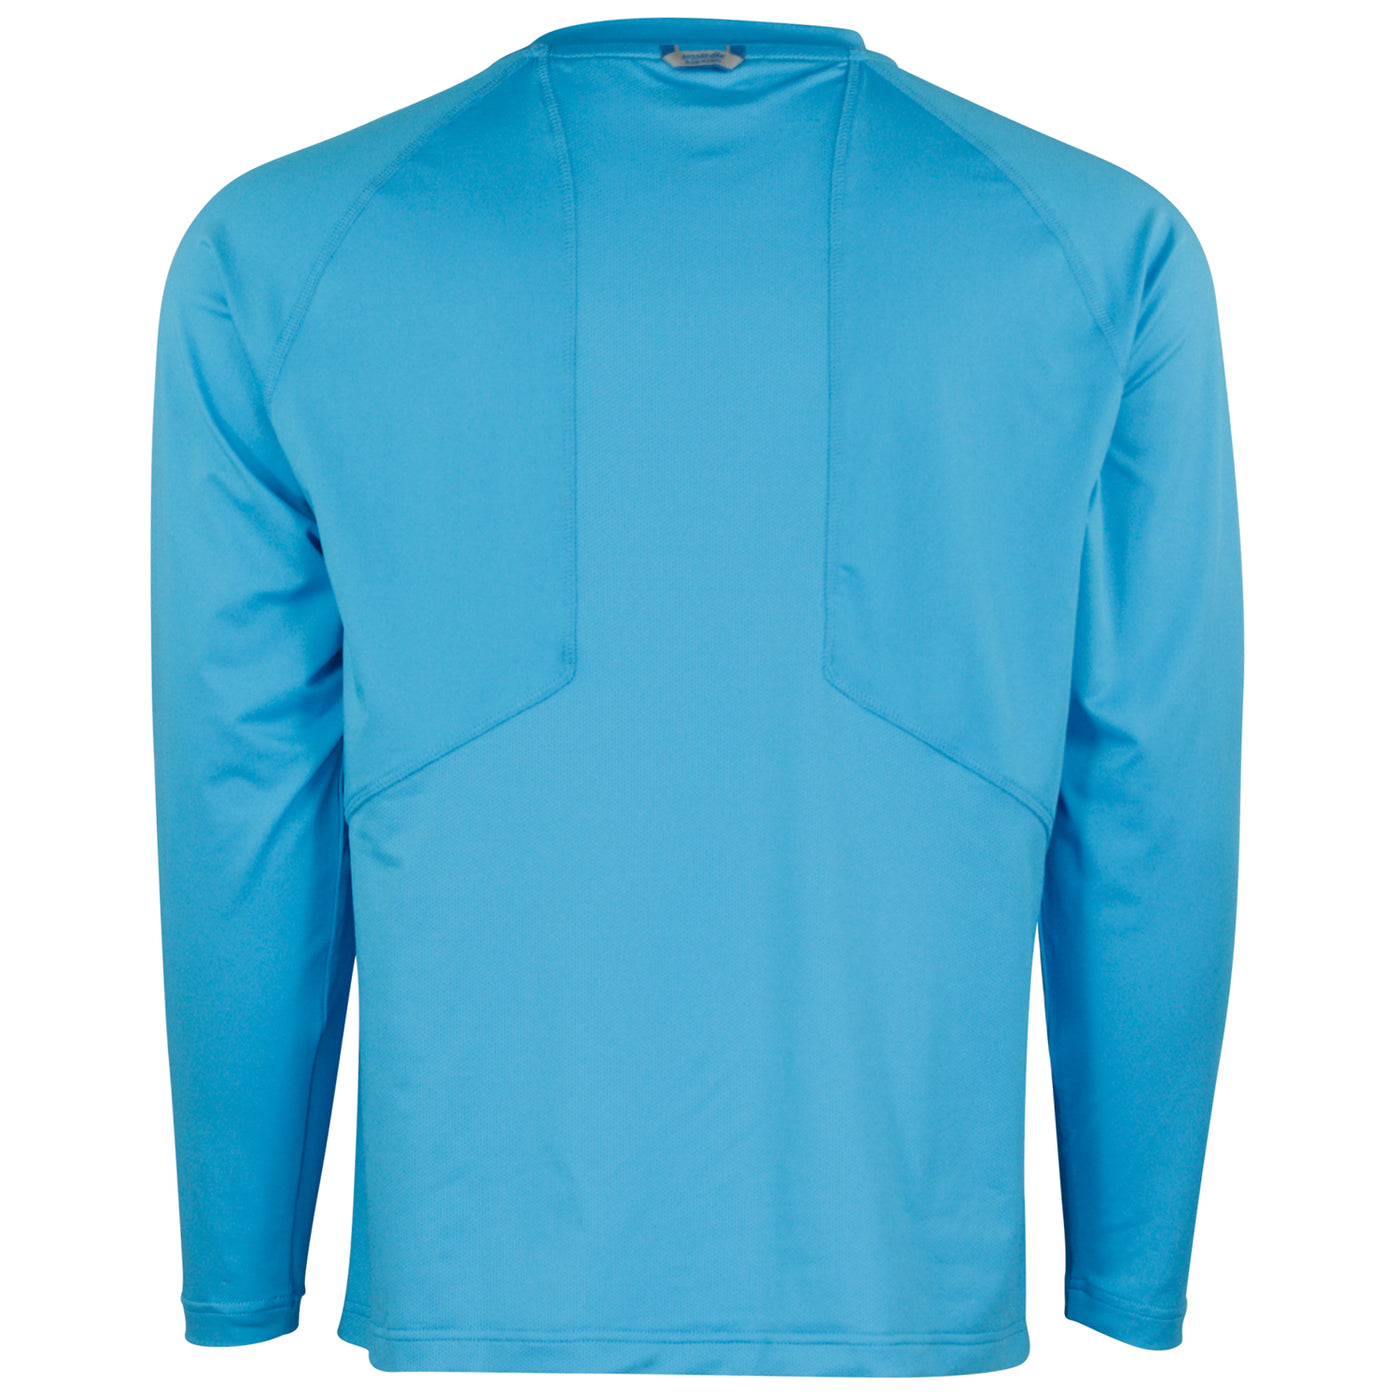 Mossy Oak Men's Long Sleeve Coolcore Fishing Shirt Blue Horizon Back